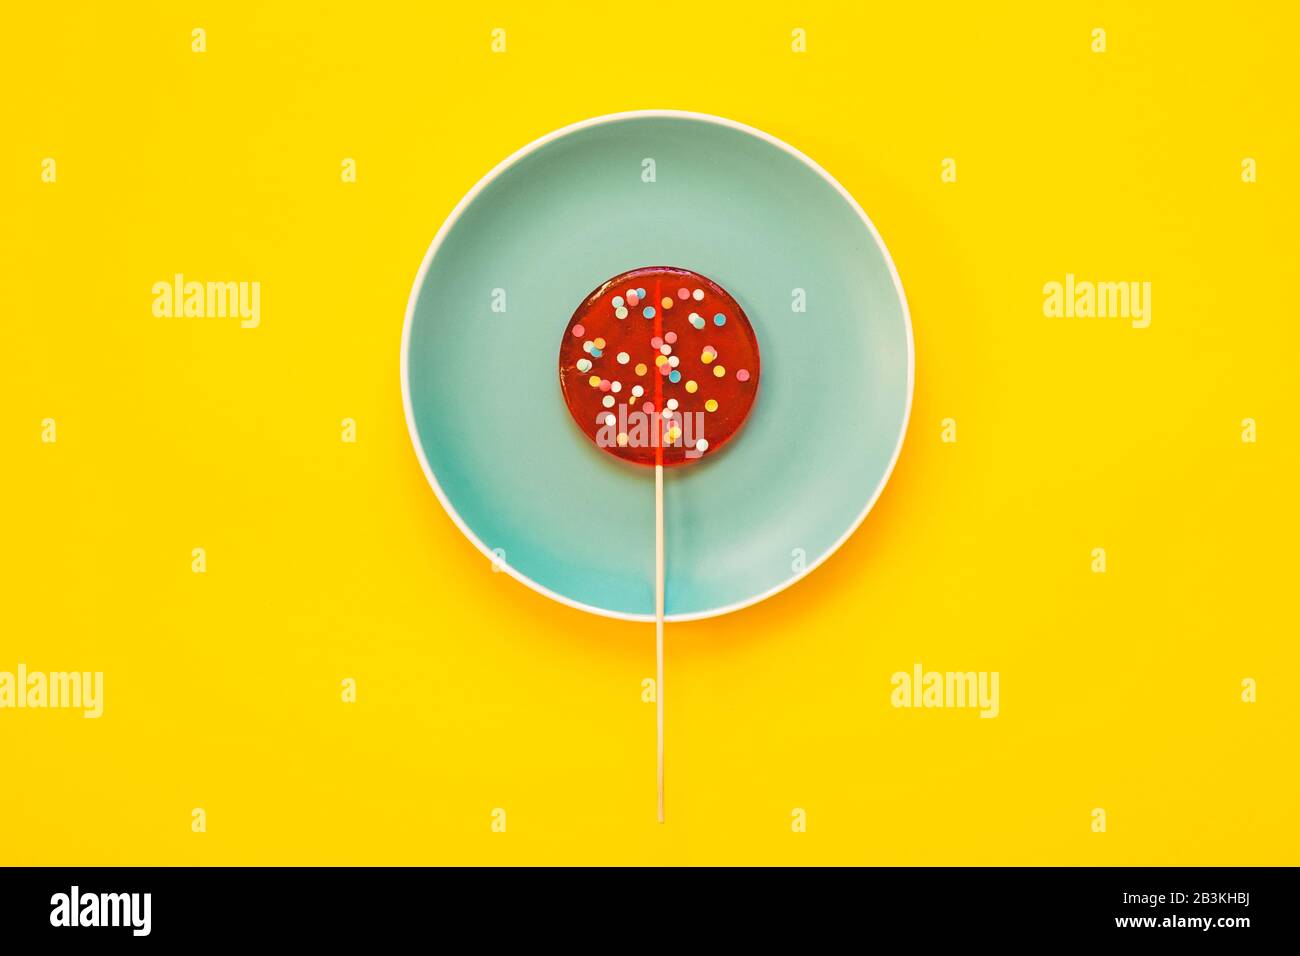 Un grand Lollipop rouge sur la plaque bleue, sur un fond jaune. Concept minimal. Banque D'Images